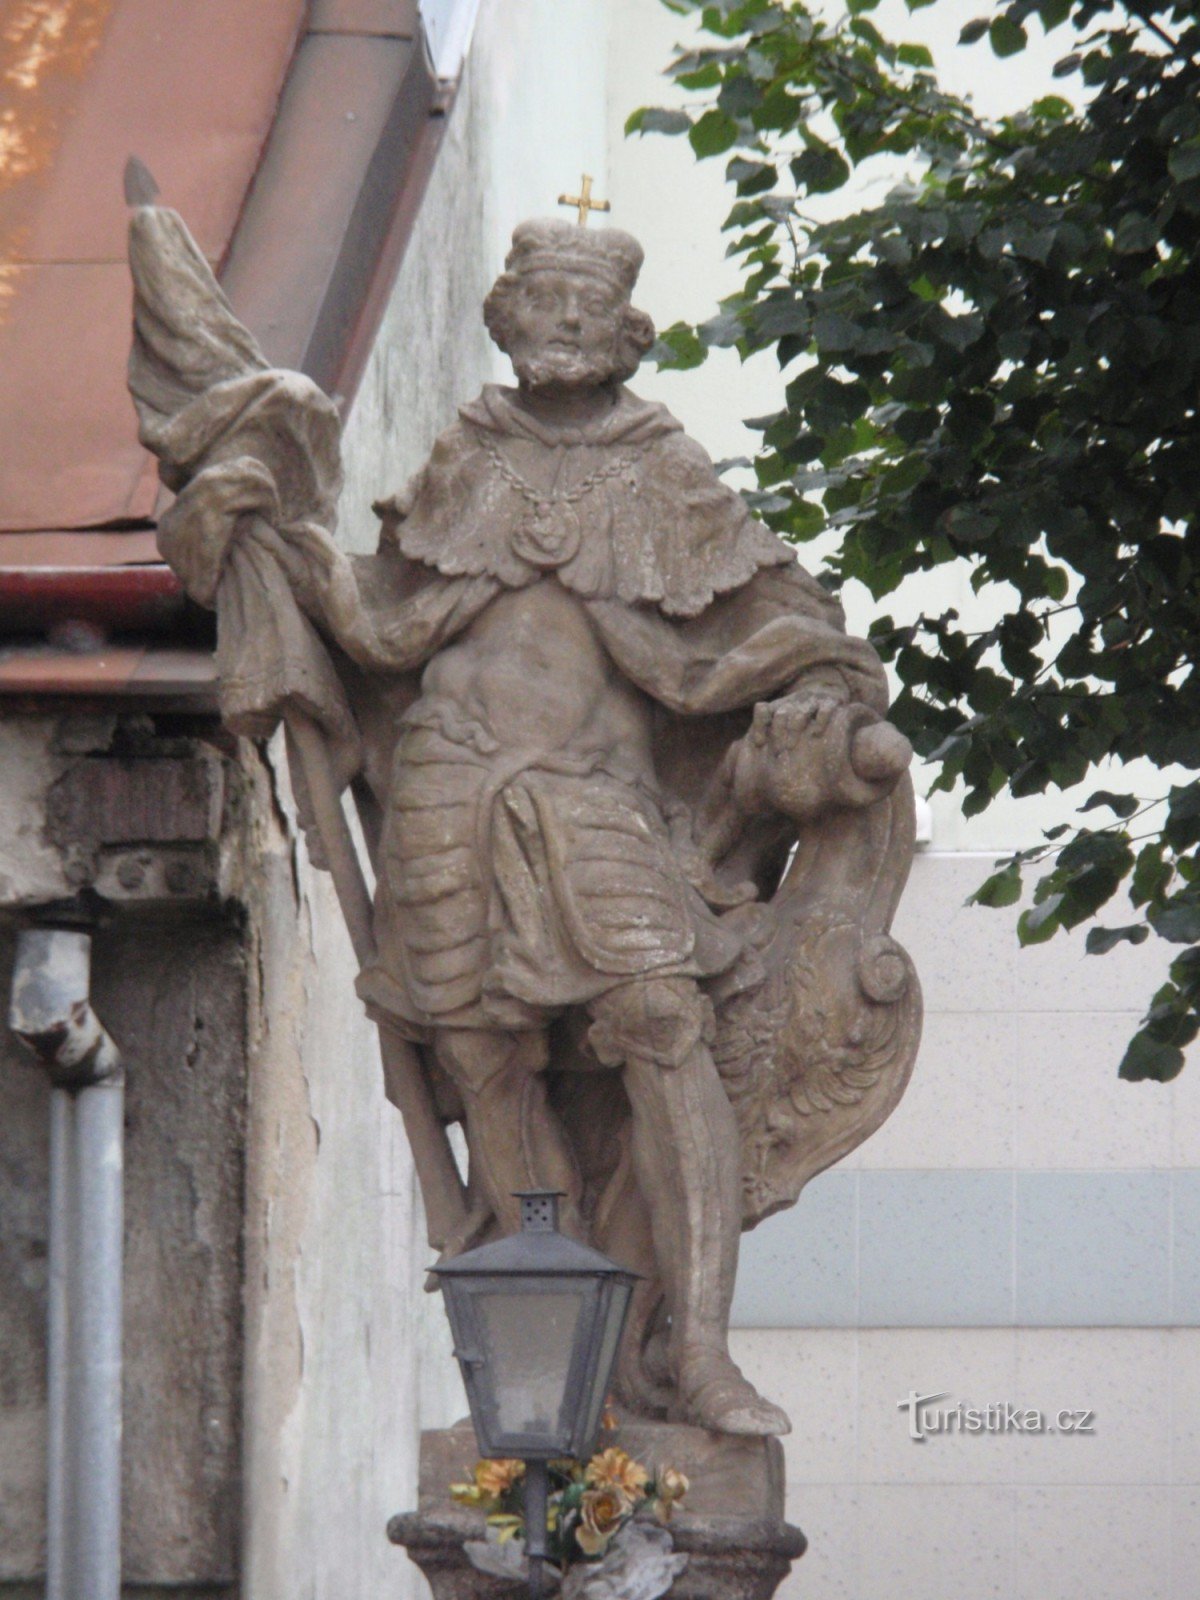 Velké Meziříčí - tác phẩm điêu khắc baroque trên đường Hornoměstská